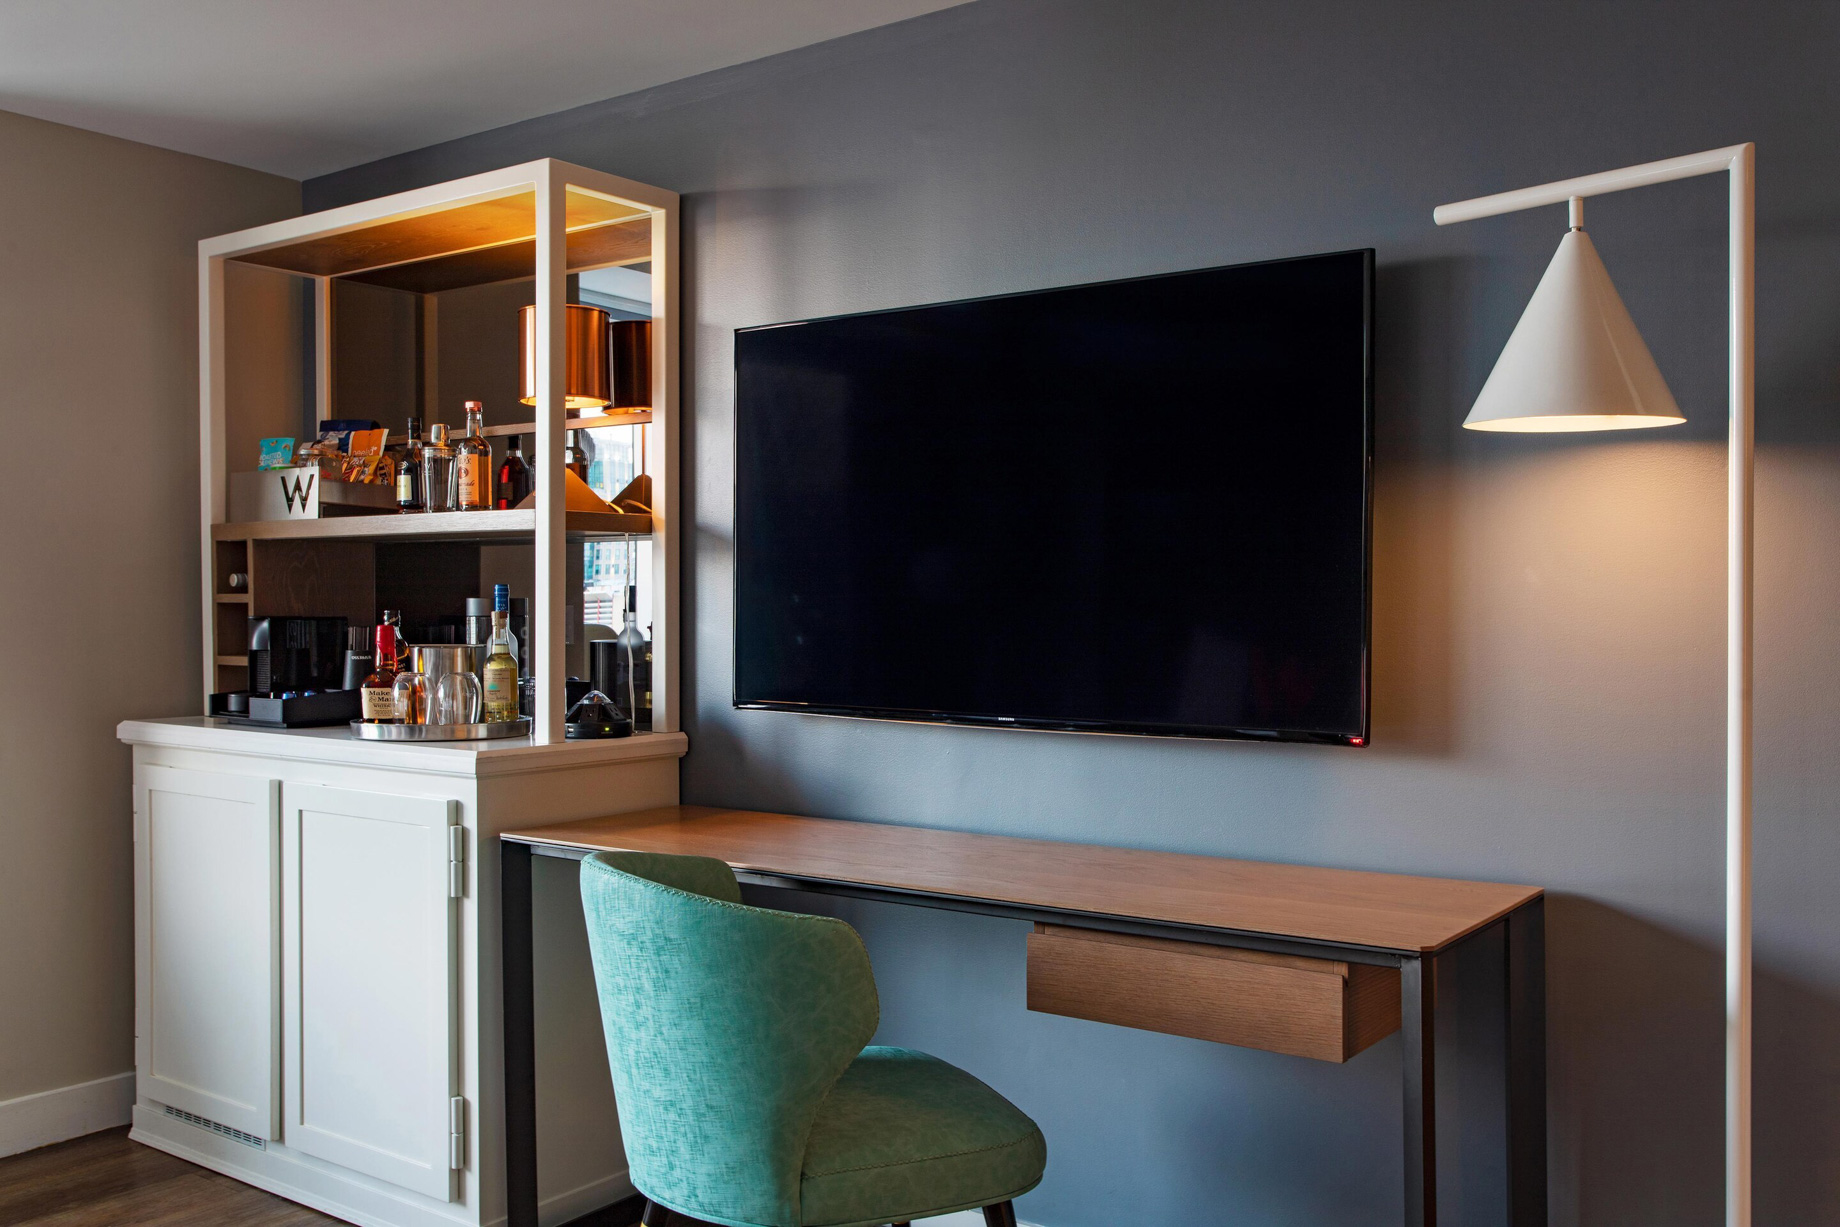 W Boston Hotel – Boston, MA, USA – Wonderful Guest Room Desk